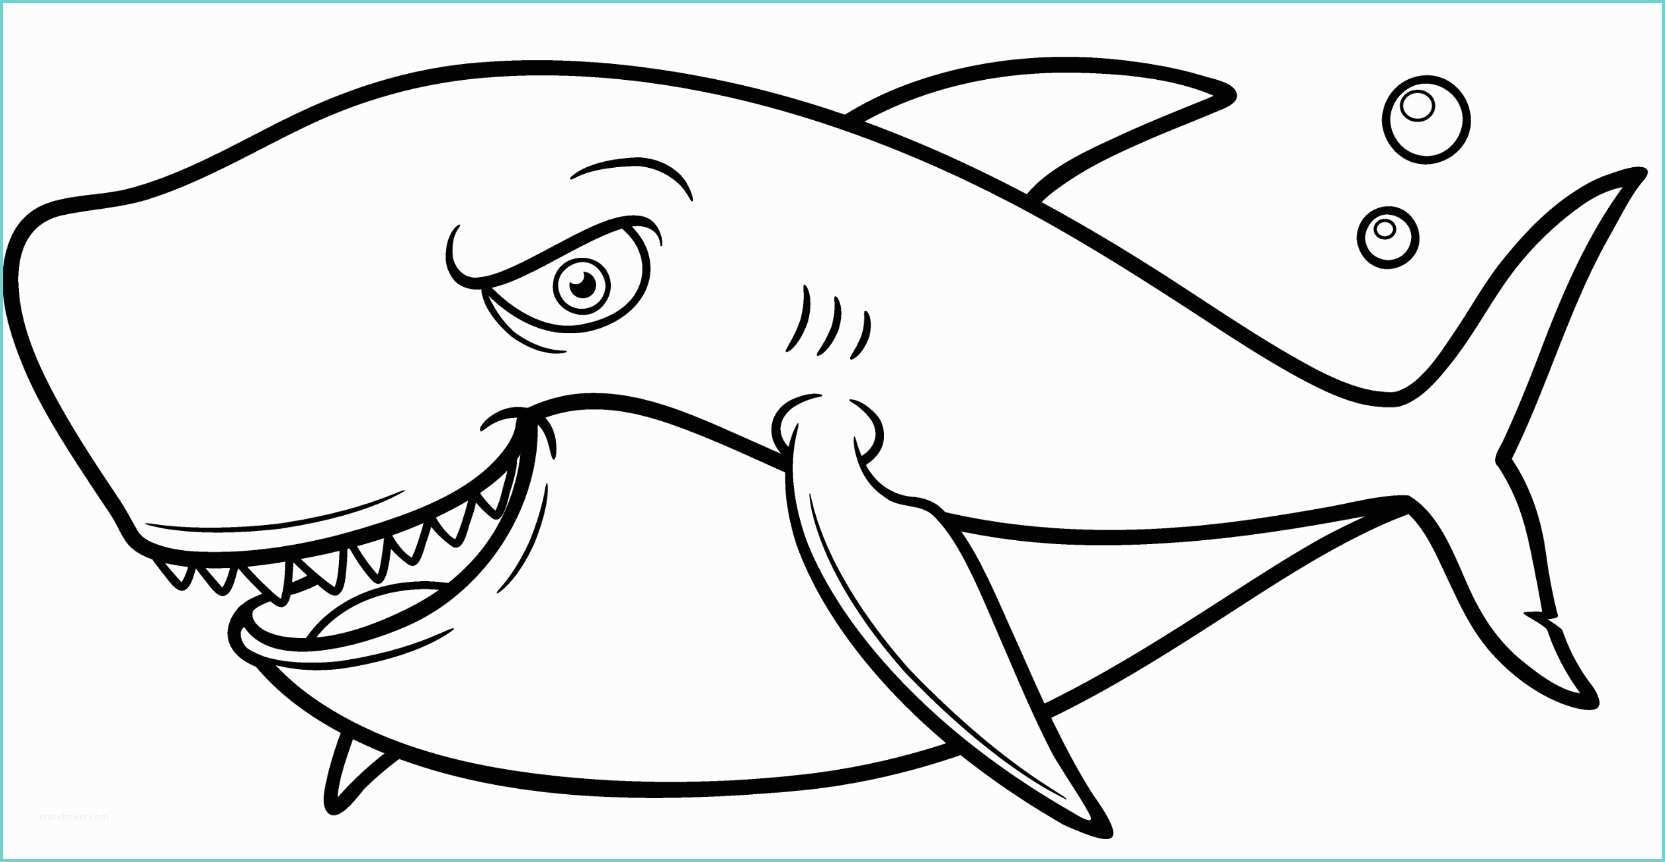 Immagini Da Disegnare Per Bambini Pesce Di Aprile Per Bambini Immagini E Scherzi Divertenti